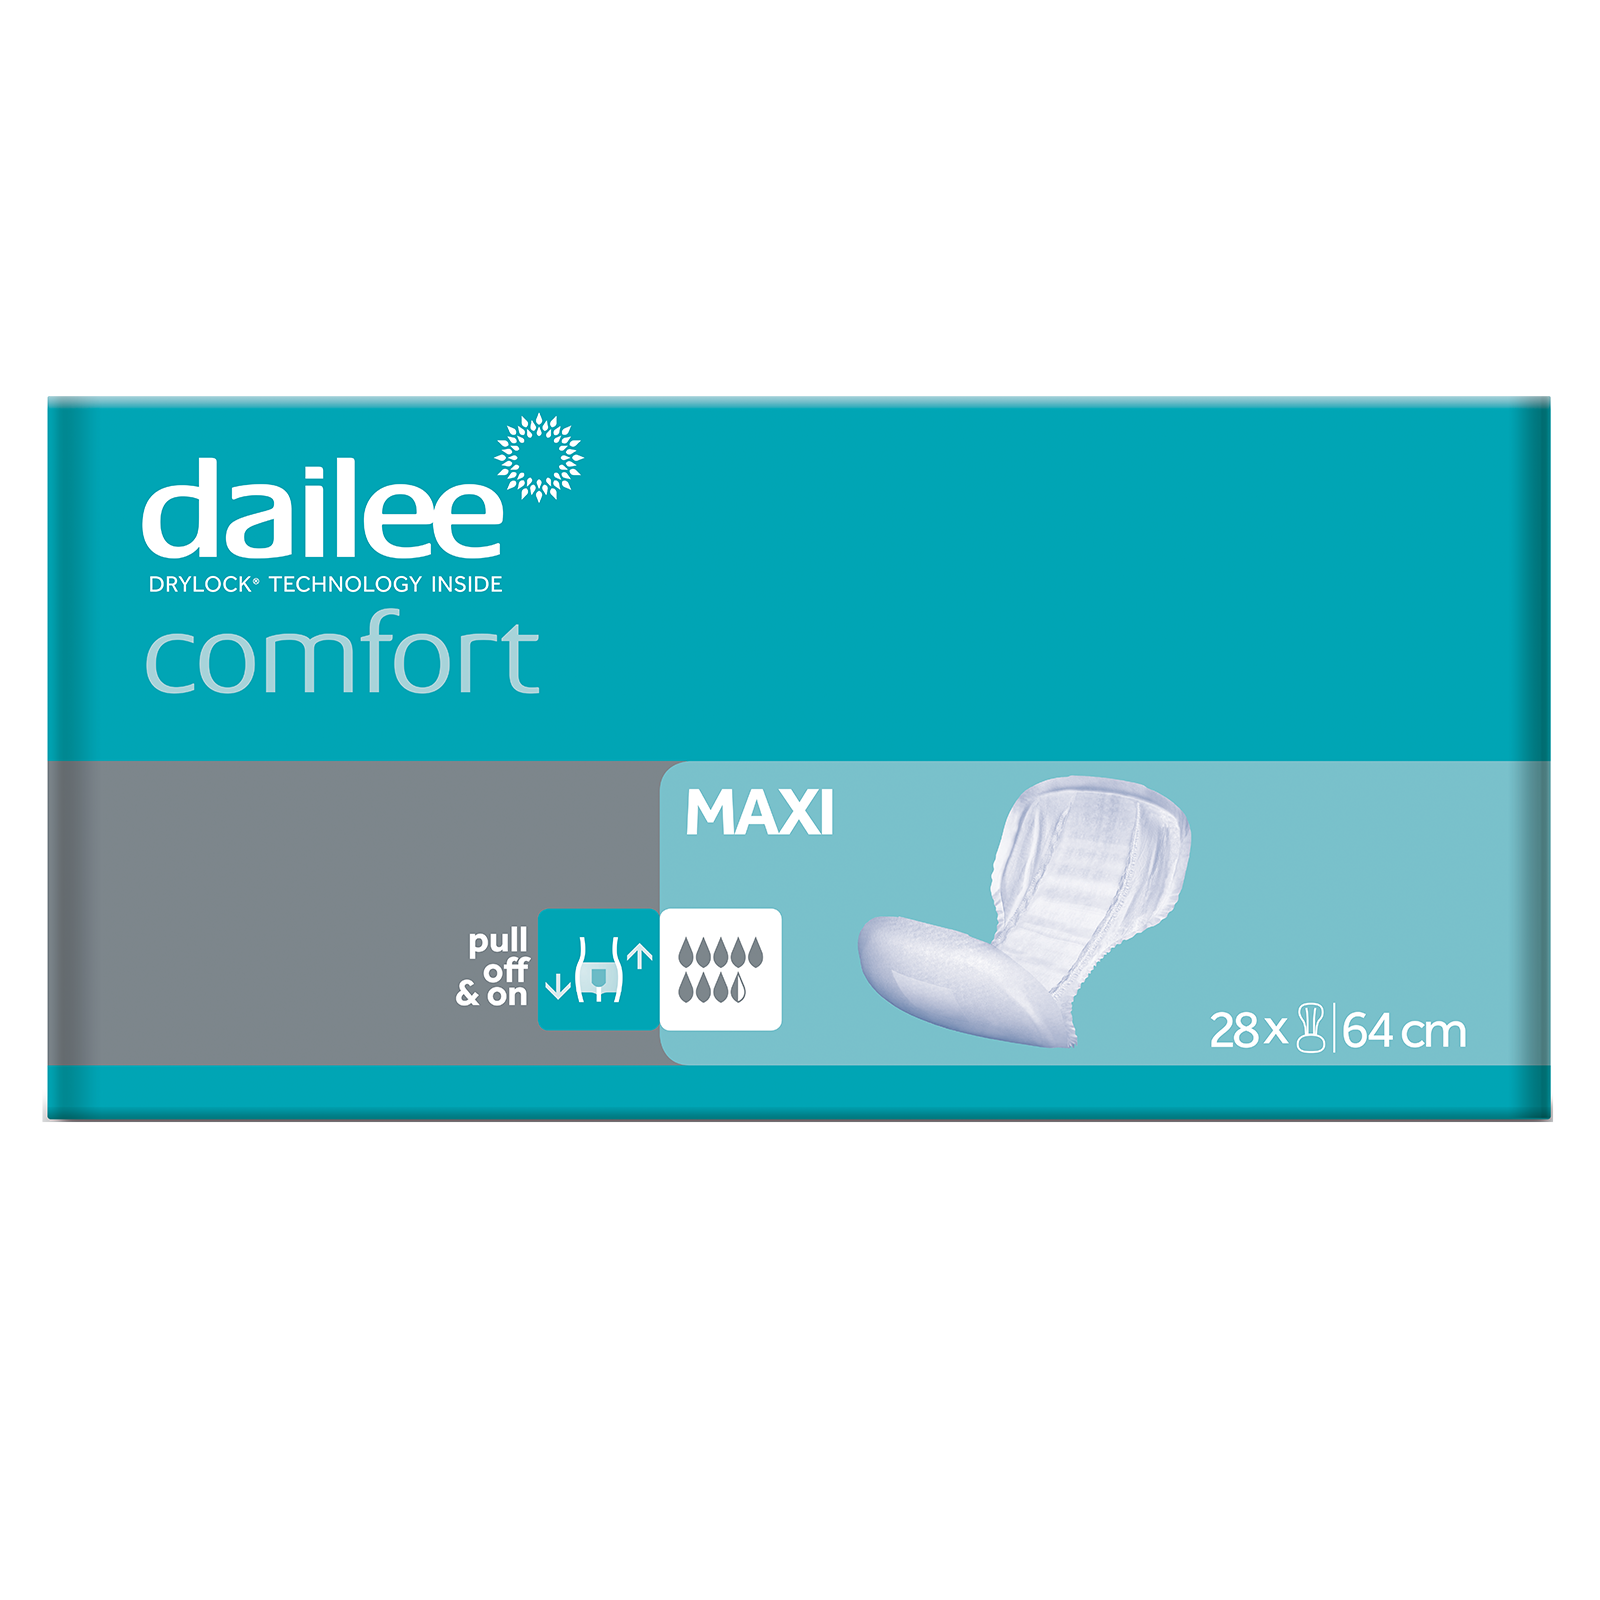 dailee_comfort_maxi_thumb